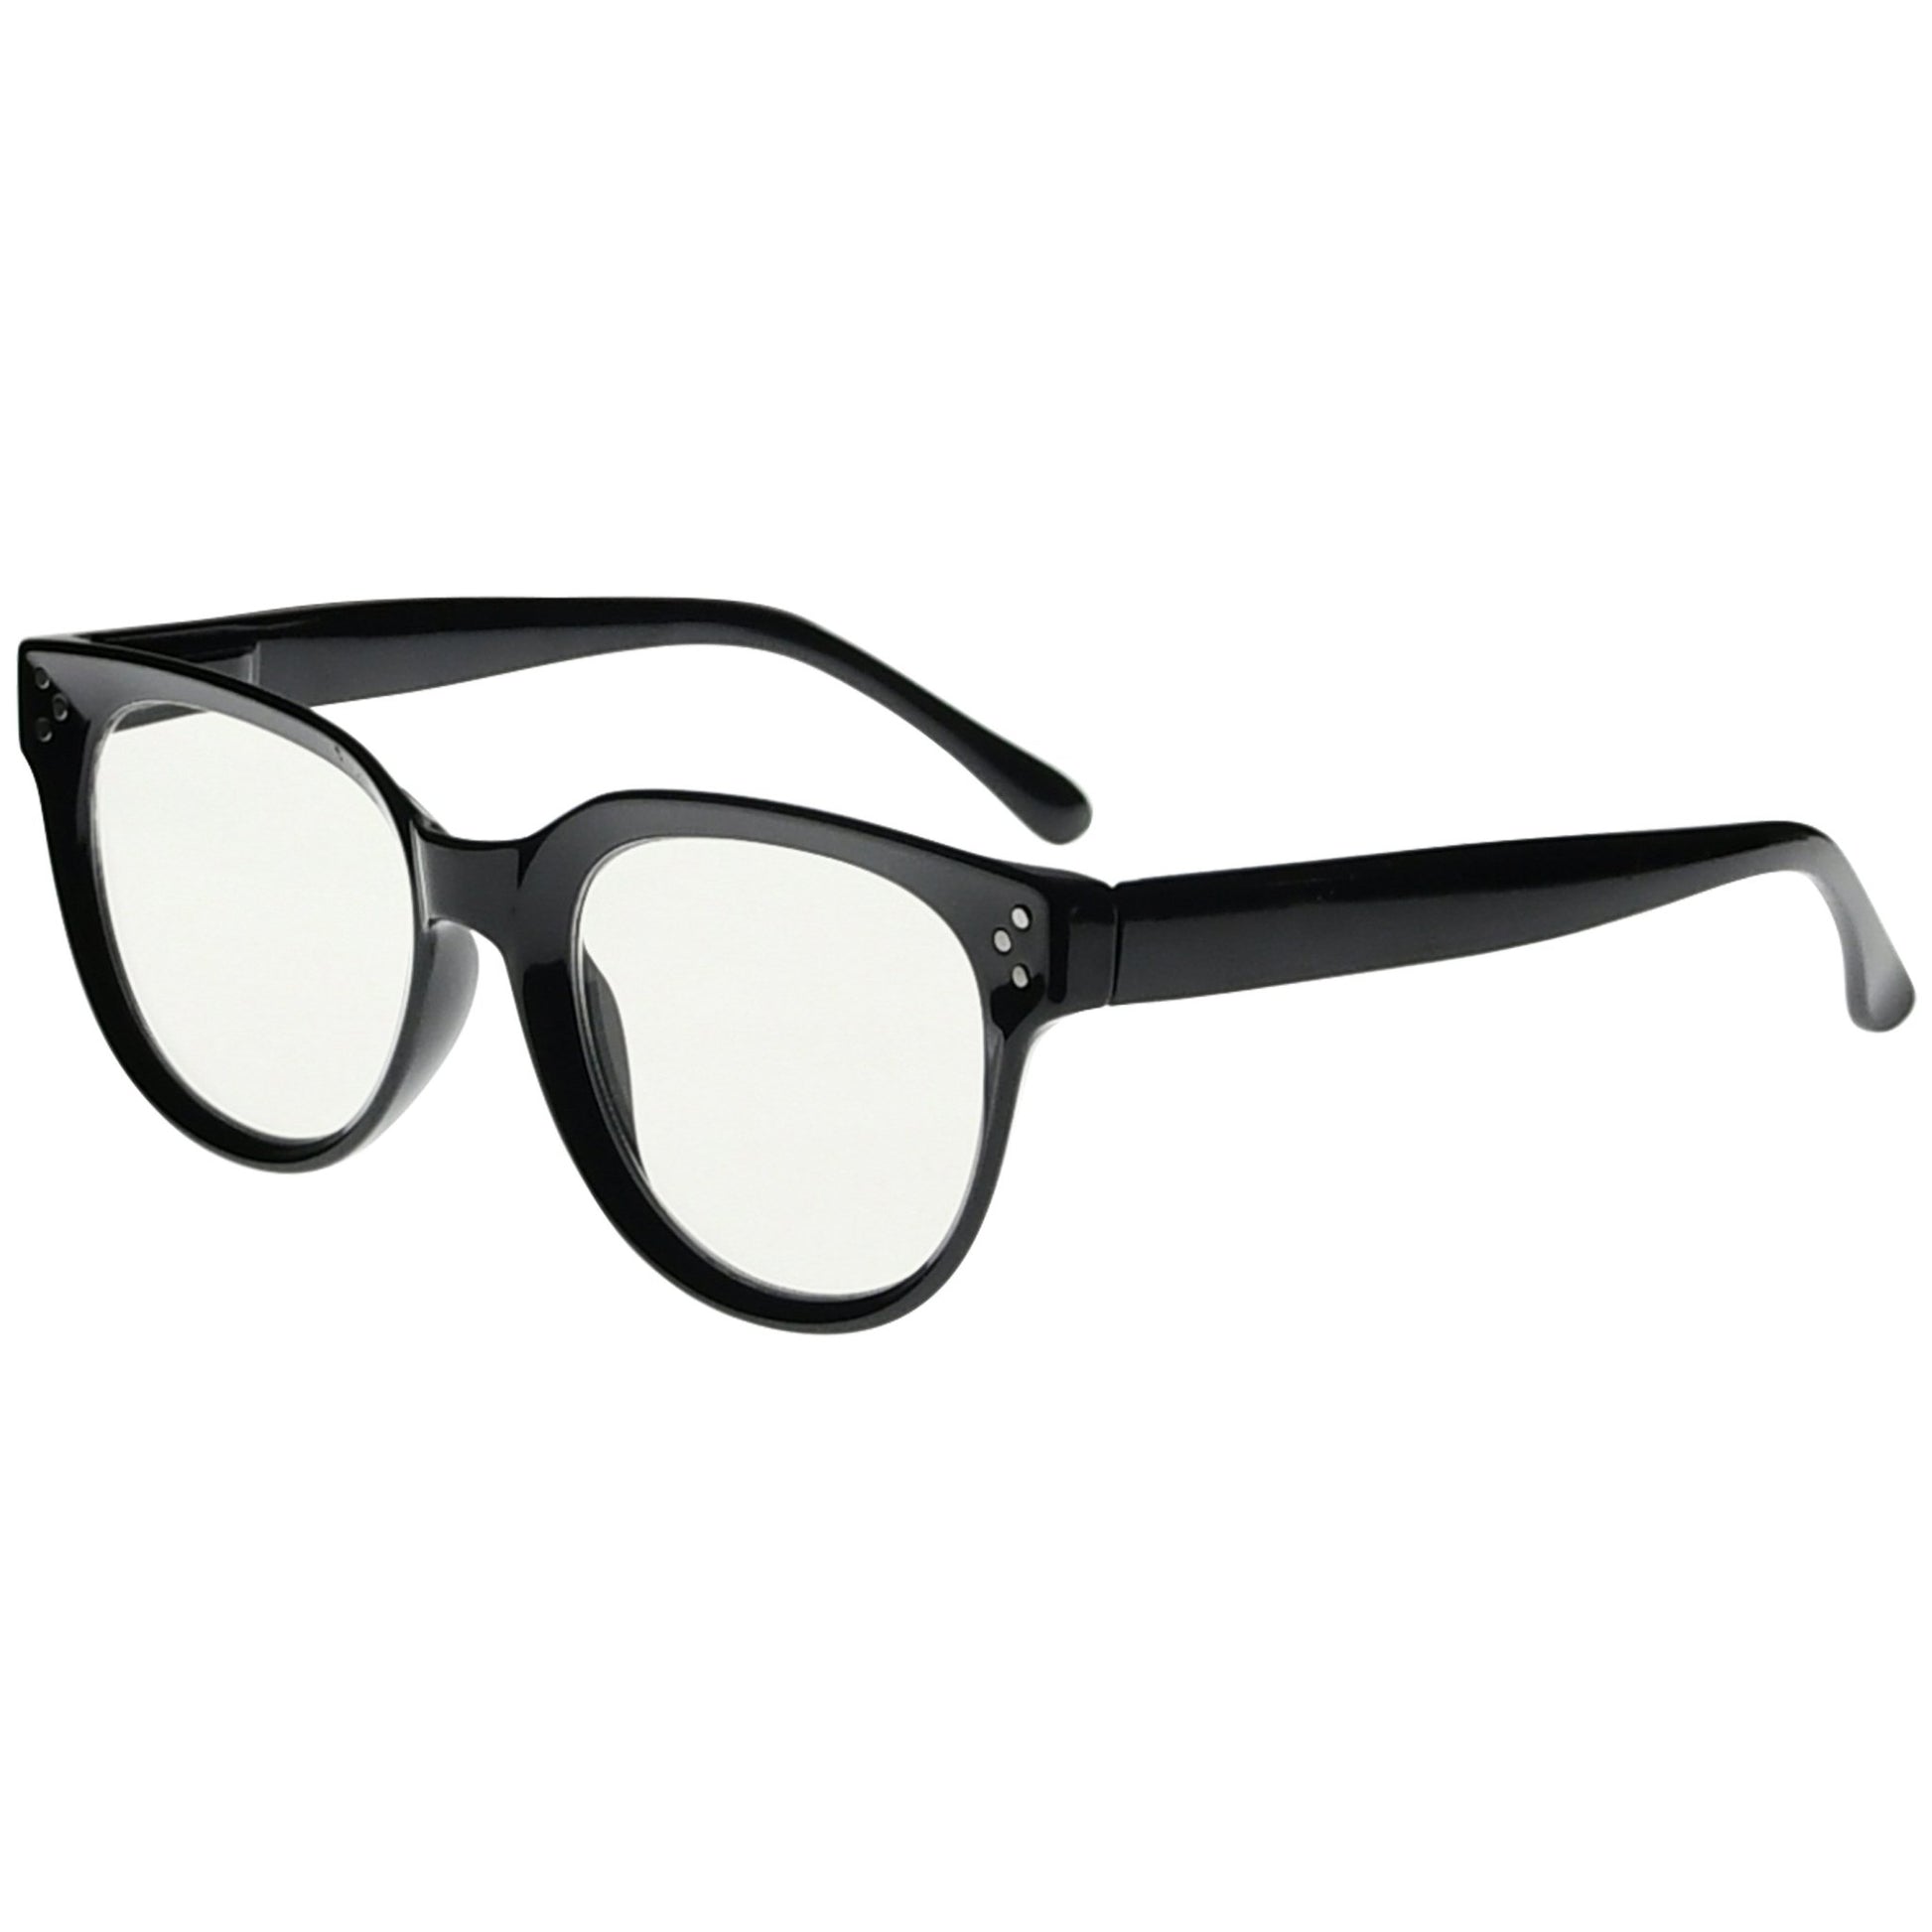 Multifocus Reading Glasses Black M9110